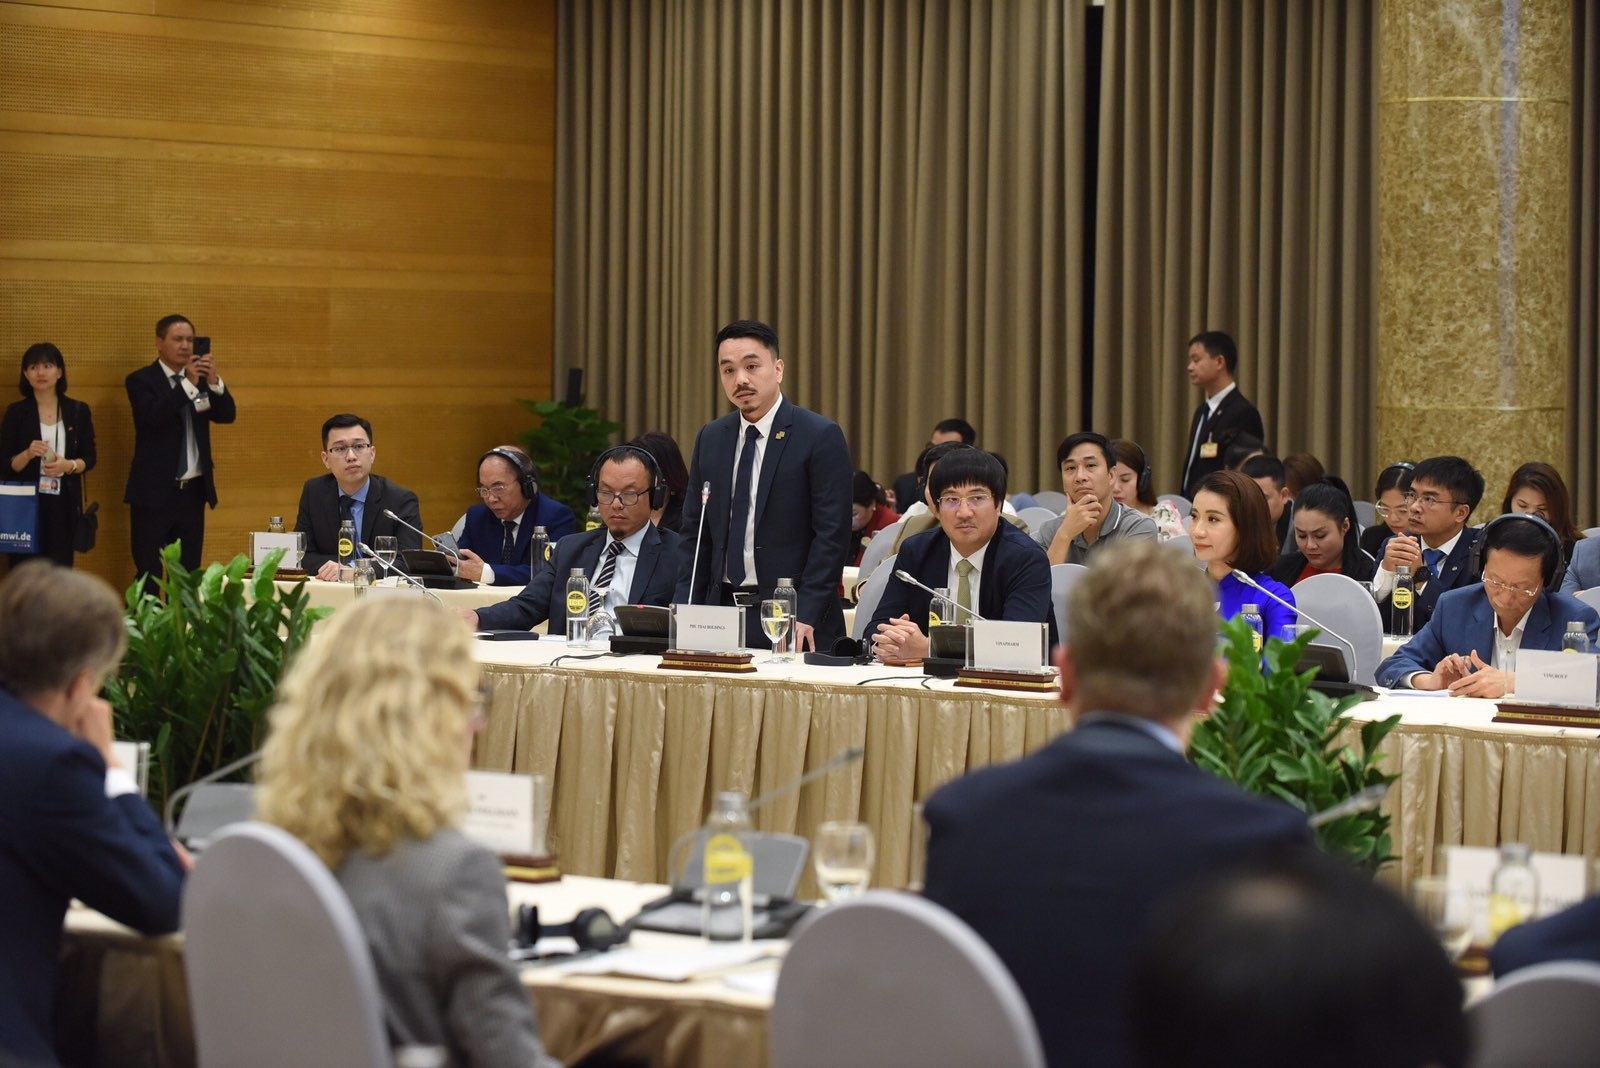 Ông Danny Le - Tổng Giám đốc Tập đoàn Masan phát biểu tại Hội nghị bàn tròn doanh nghiệp Việt Nam - Đức.